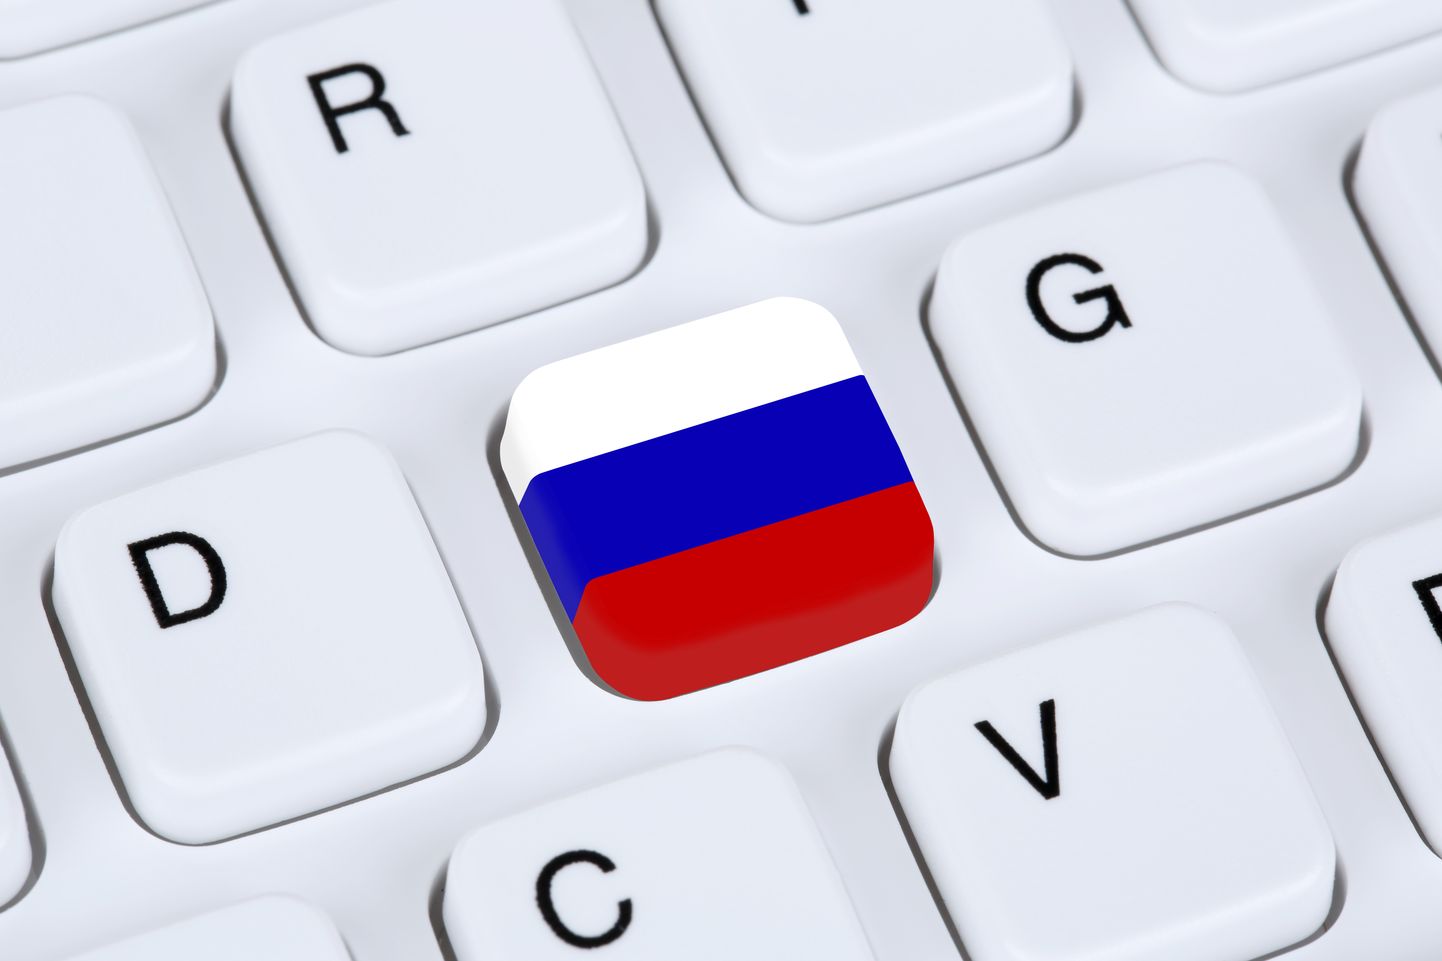 ​Venemaa valitsus kiitis heaks autonoomse andmesidevõrgu Runet eelnõu, eeldusel, et seda viimistletakse.